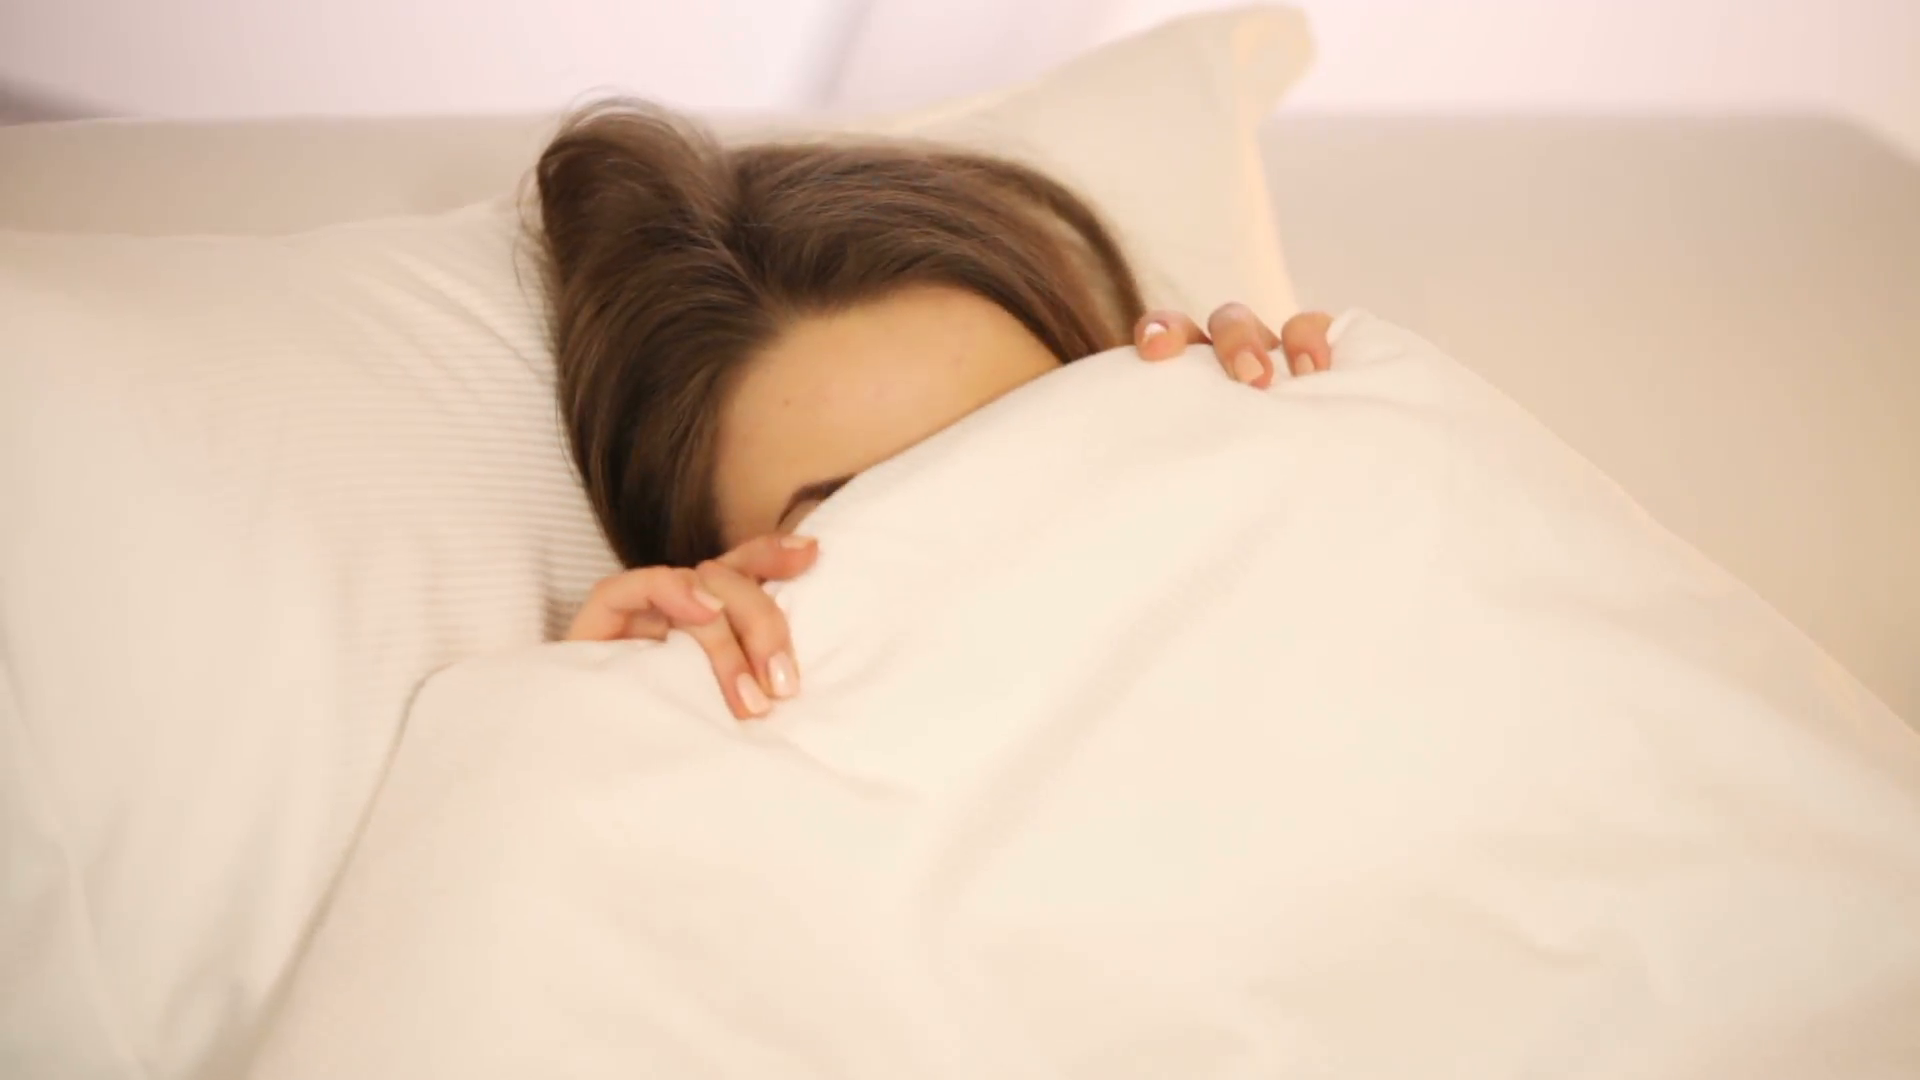 4 thói quen khi ngủ dễ gây hại thân nhiều hơn bạn tưởng, nên thay đổi càng sớm càng tốt - Ảnh 2.